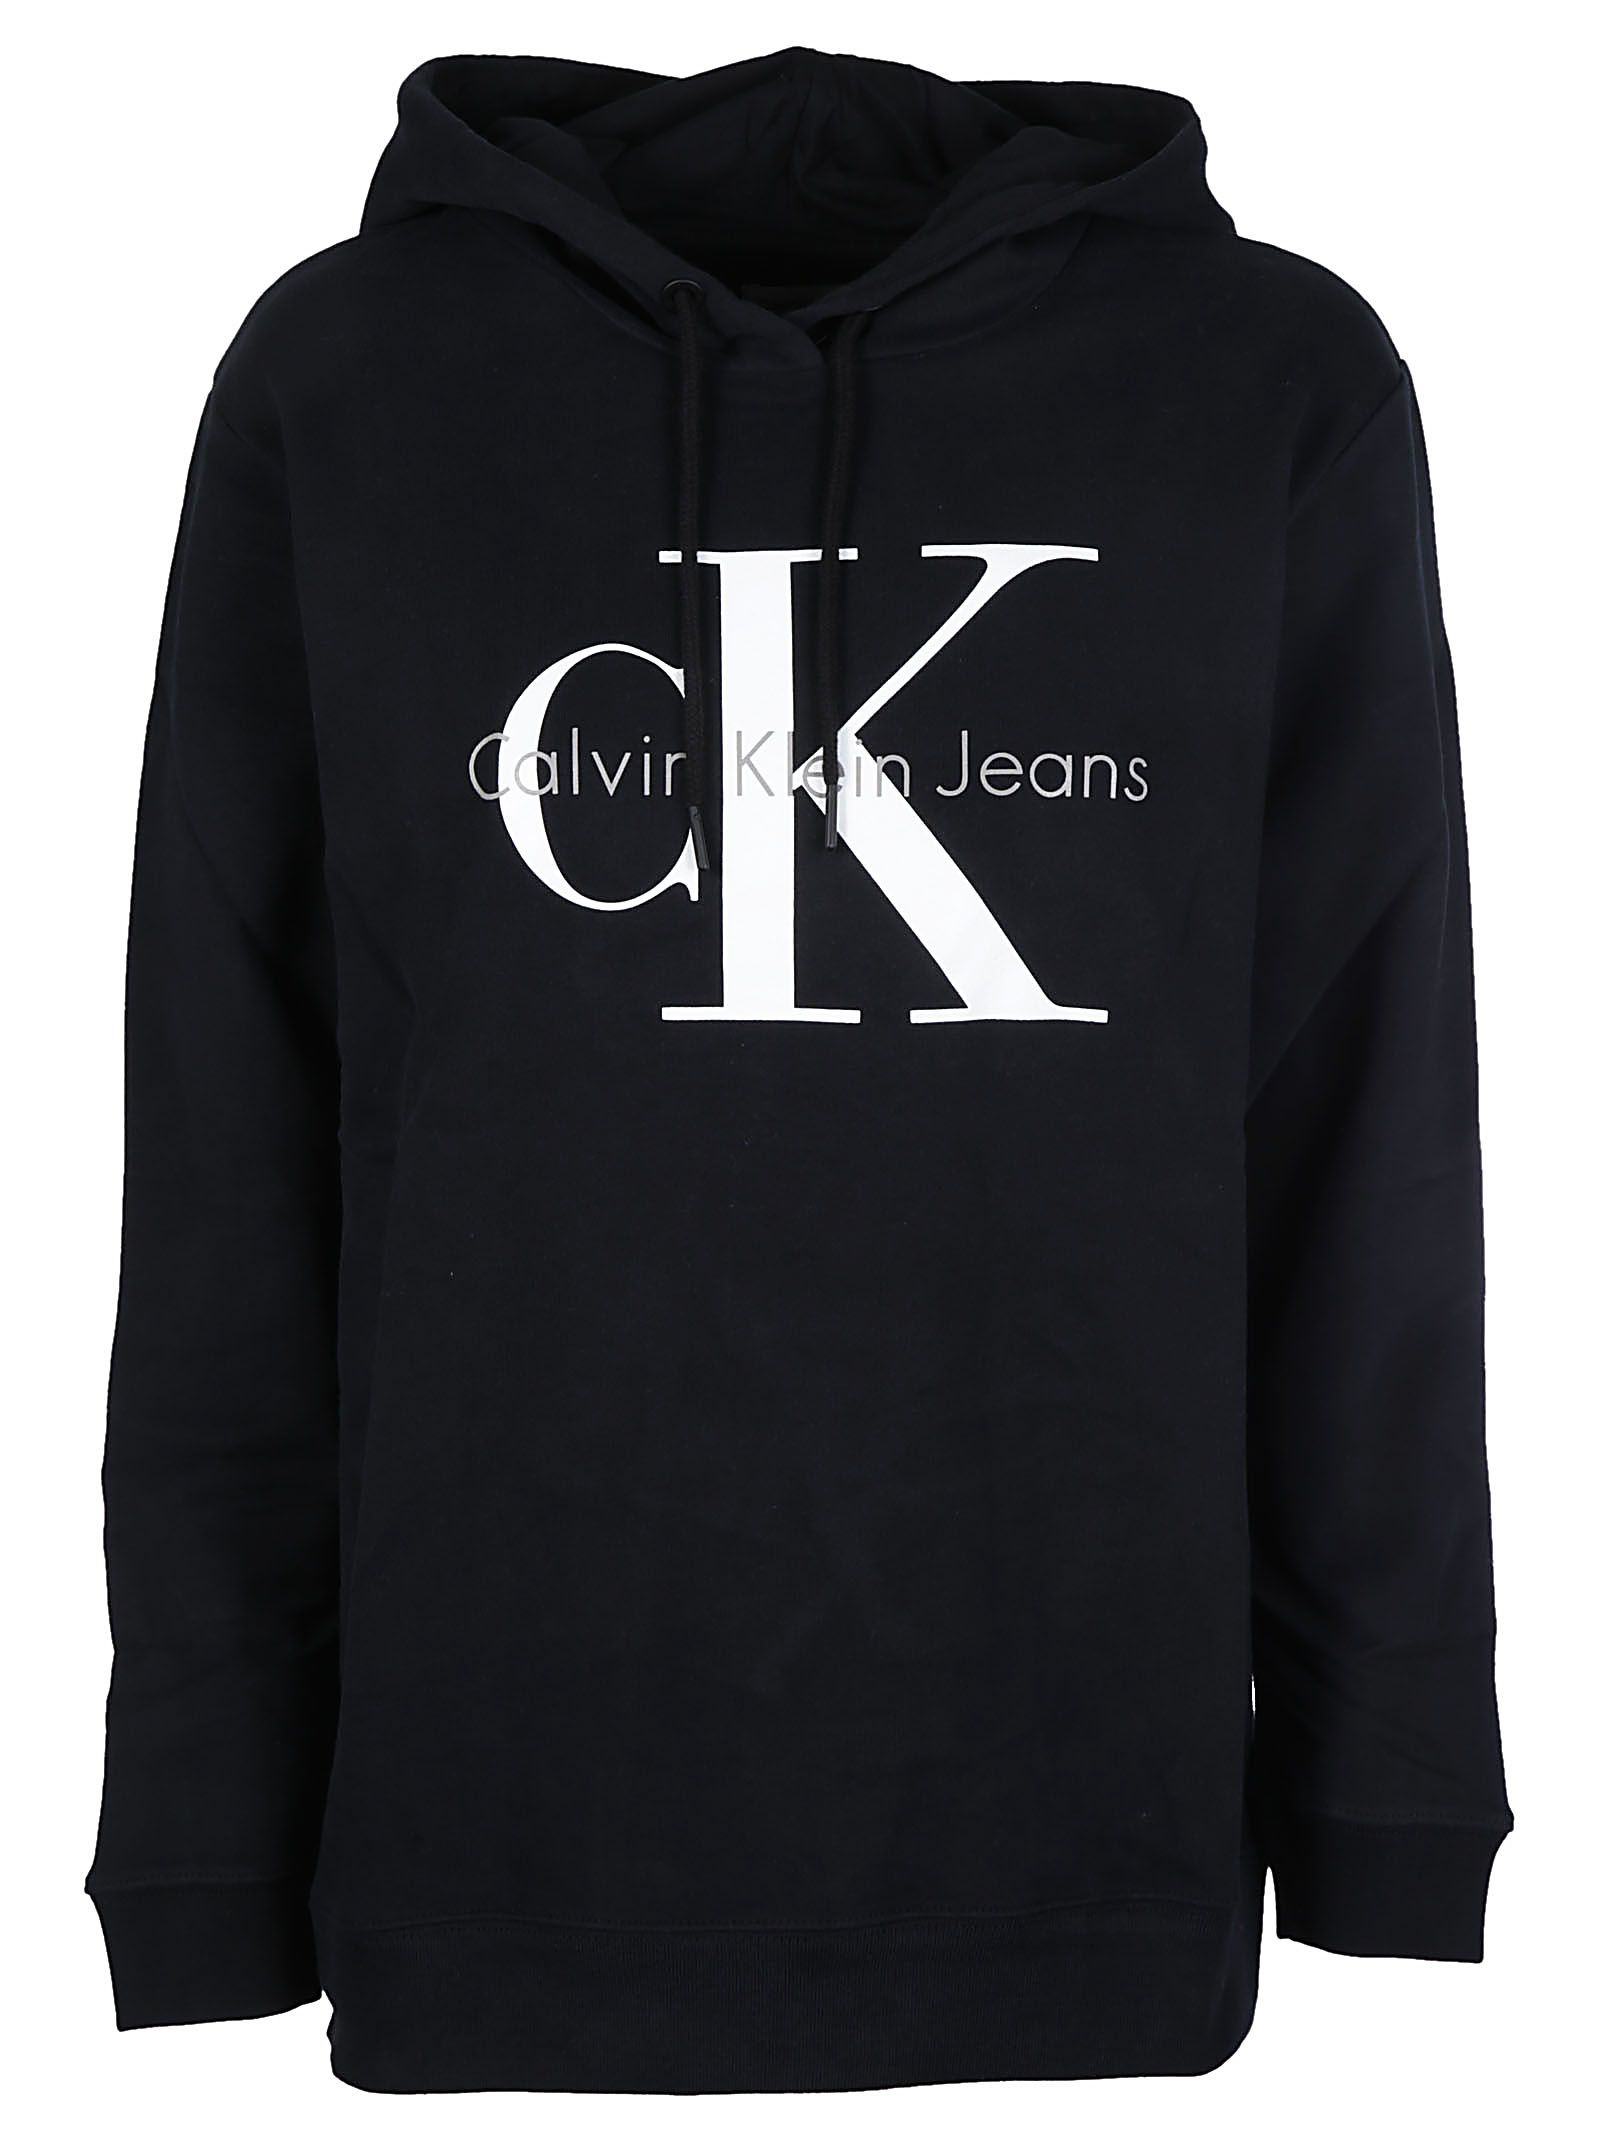 italist | Best price in the market for Calvin Klein Calvin Klein Jeans ...